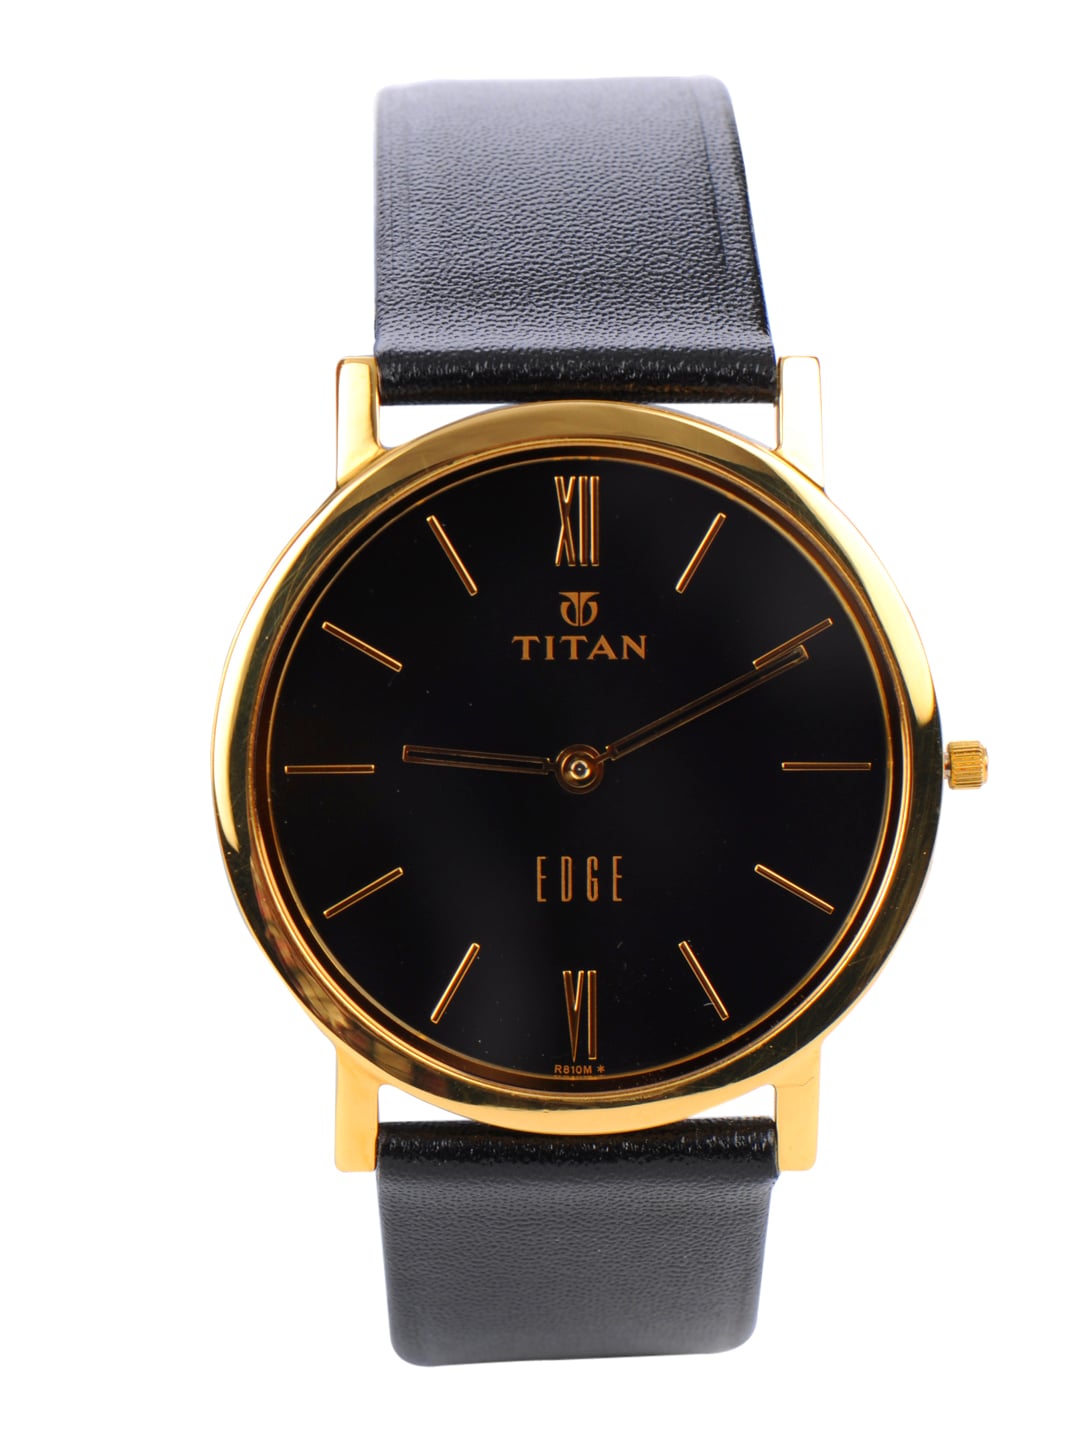 Titan Edge Men Black Dial Watch